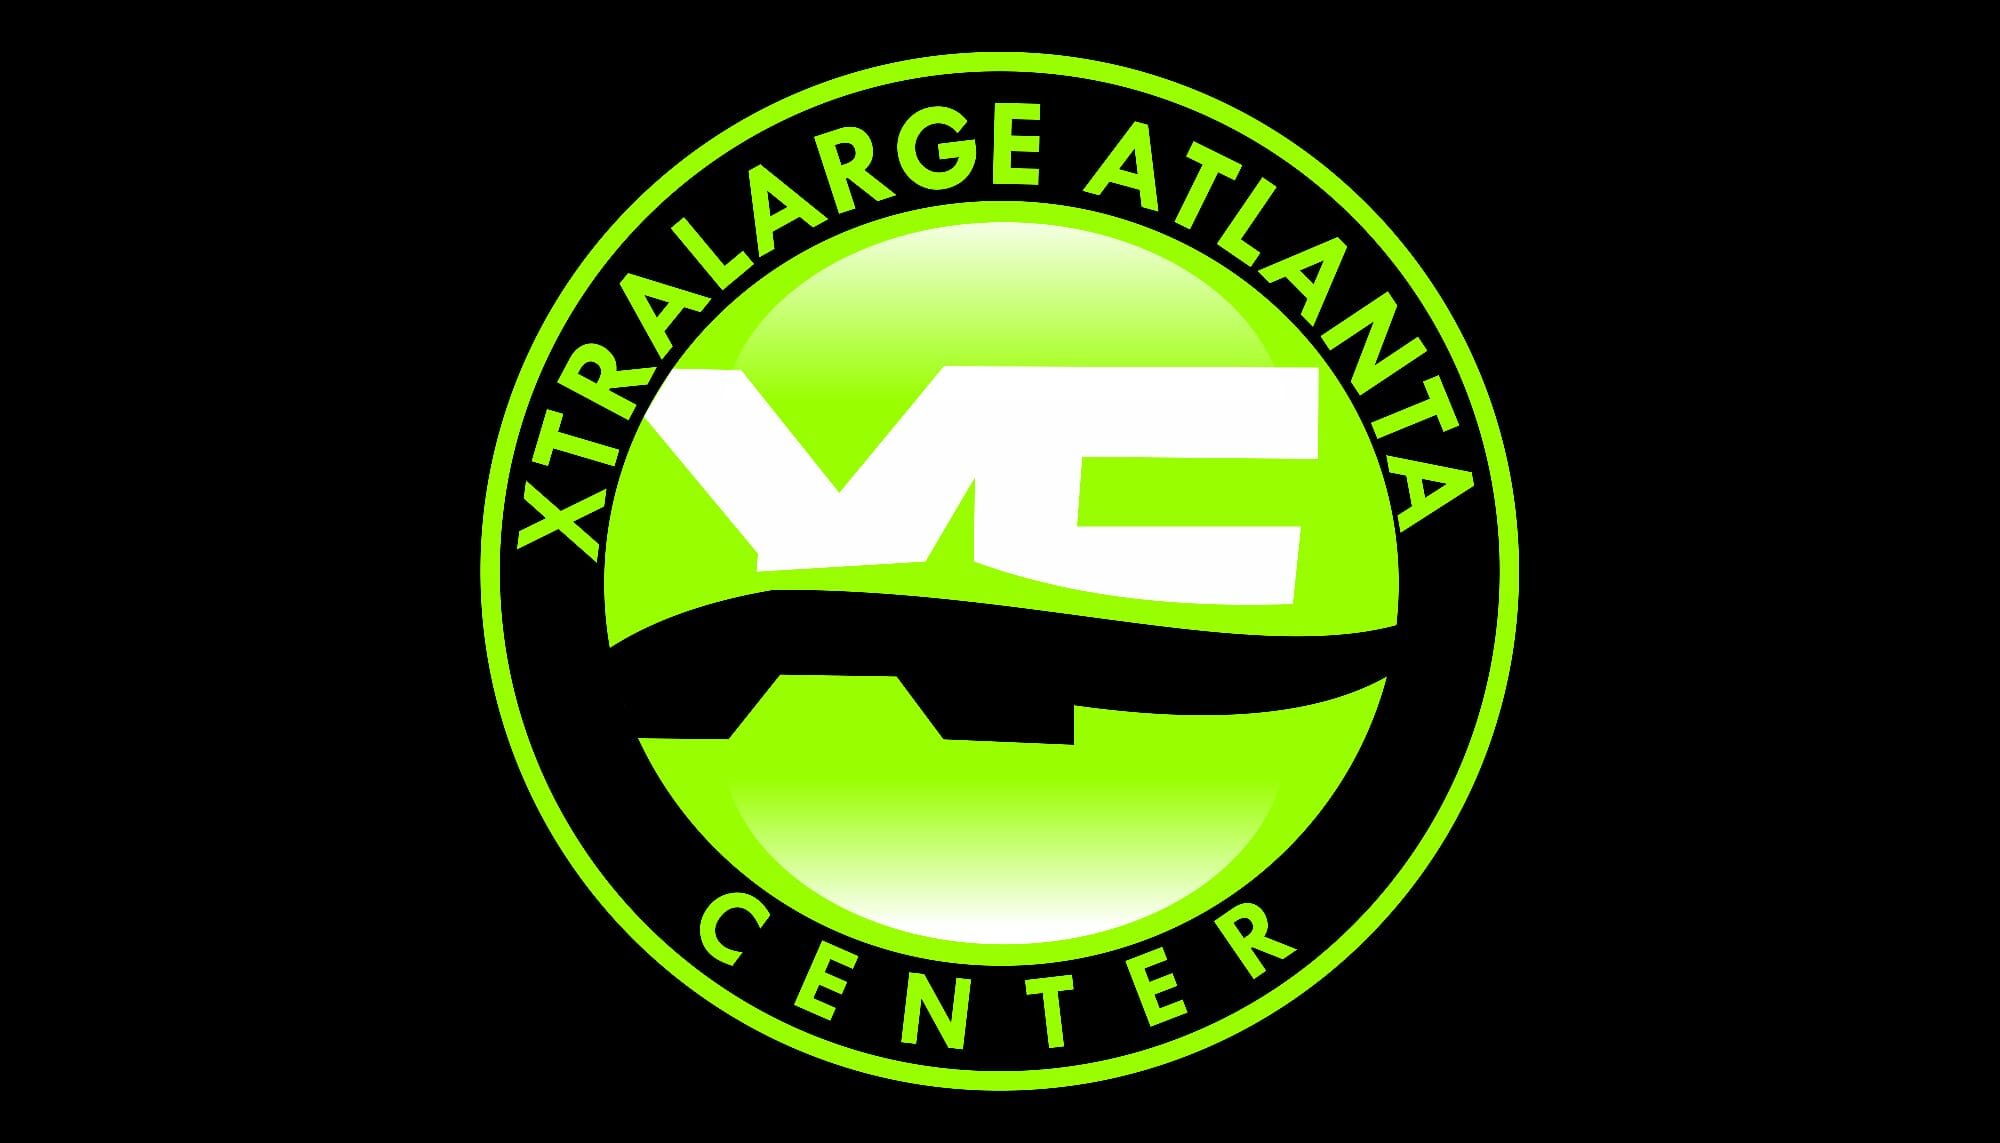 XtraLarge Farms Atlanta Centre